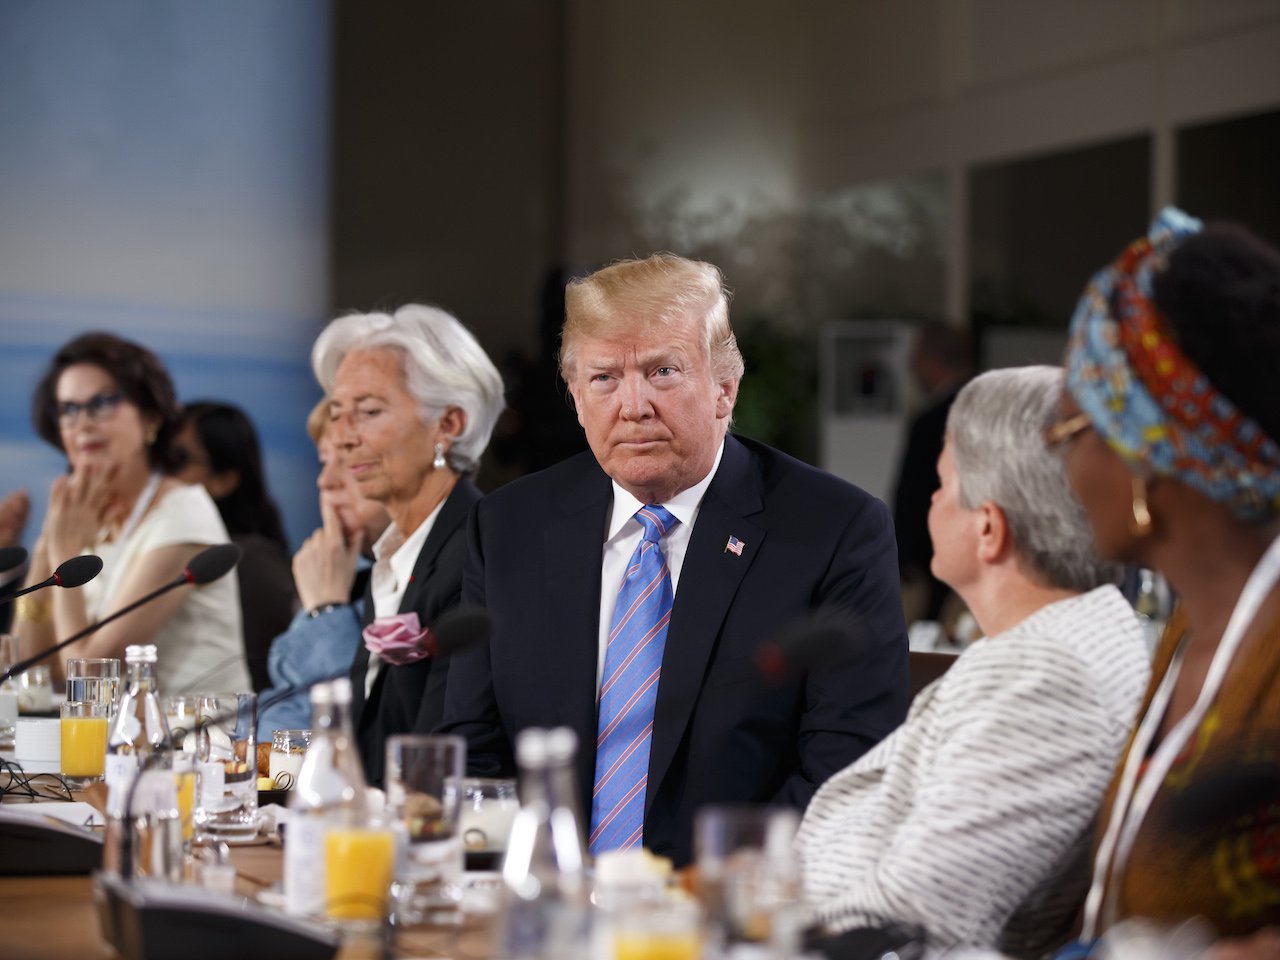 Farrah Khan speaks against gender based violence at G7 in front of Donald Trump